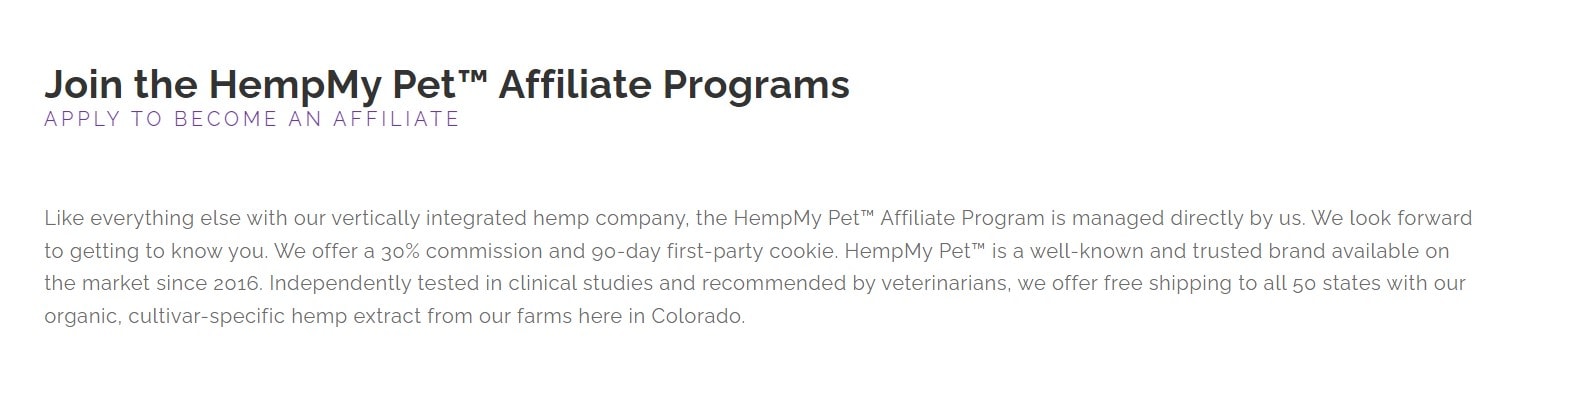 HempMyPet Affiliate Programs 